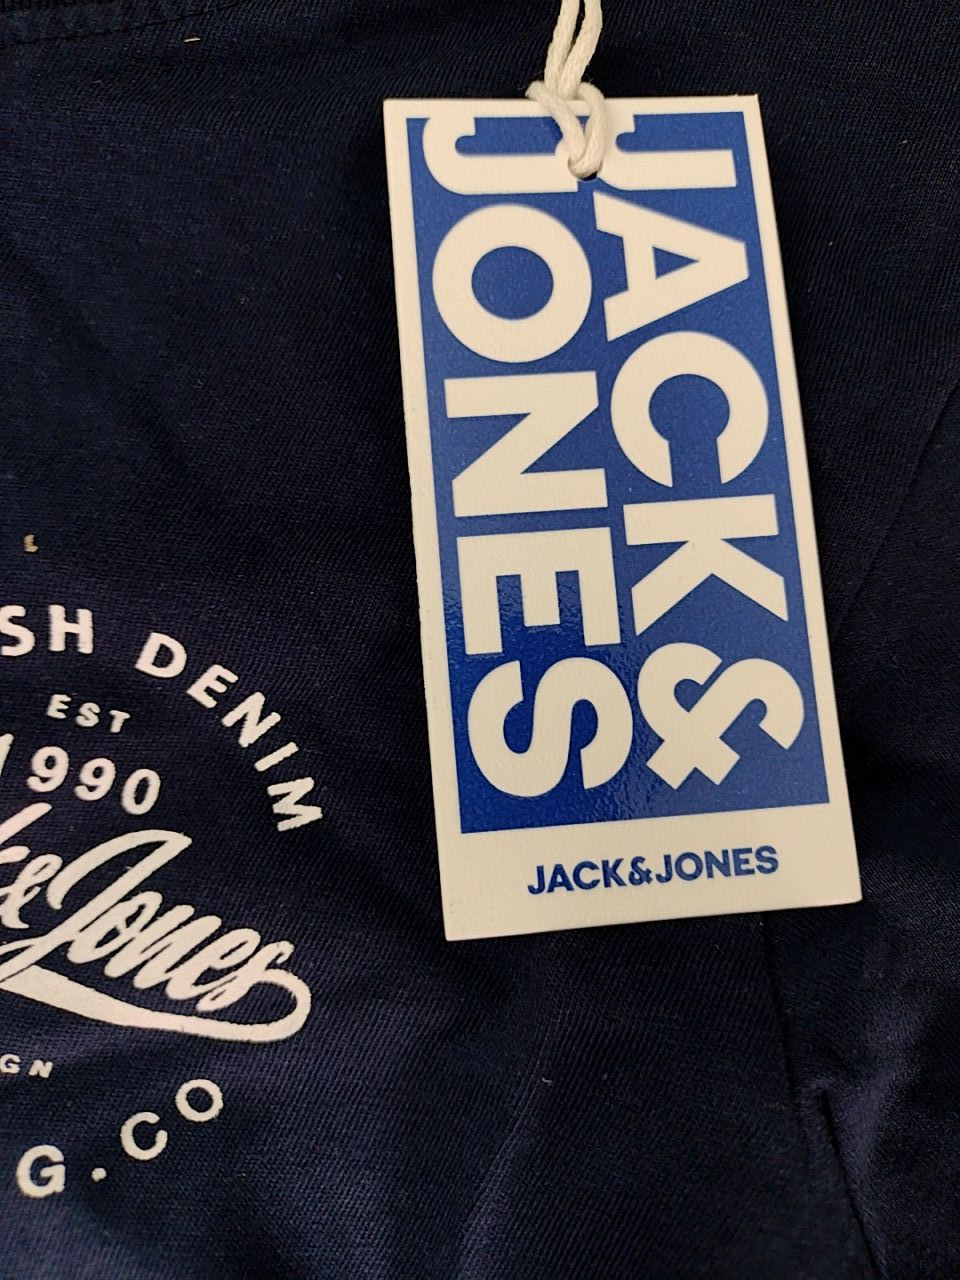 Tričko s krátkým rukávem Jack & Jones vel. na 10 let - 140